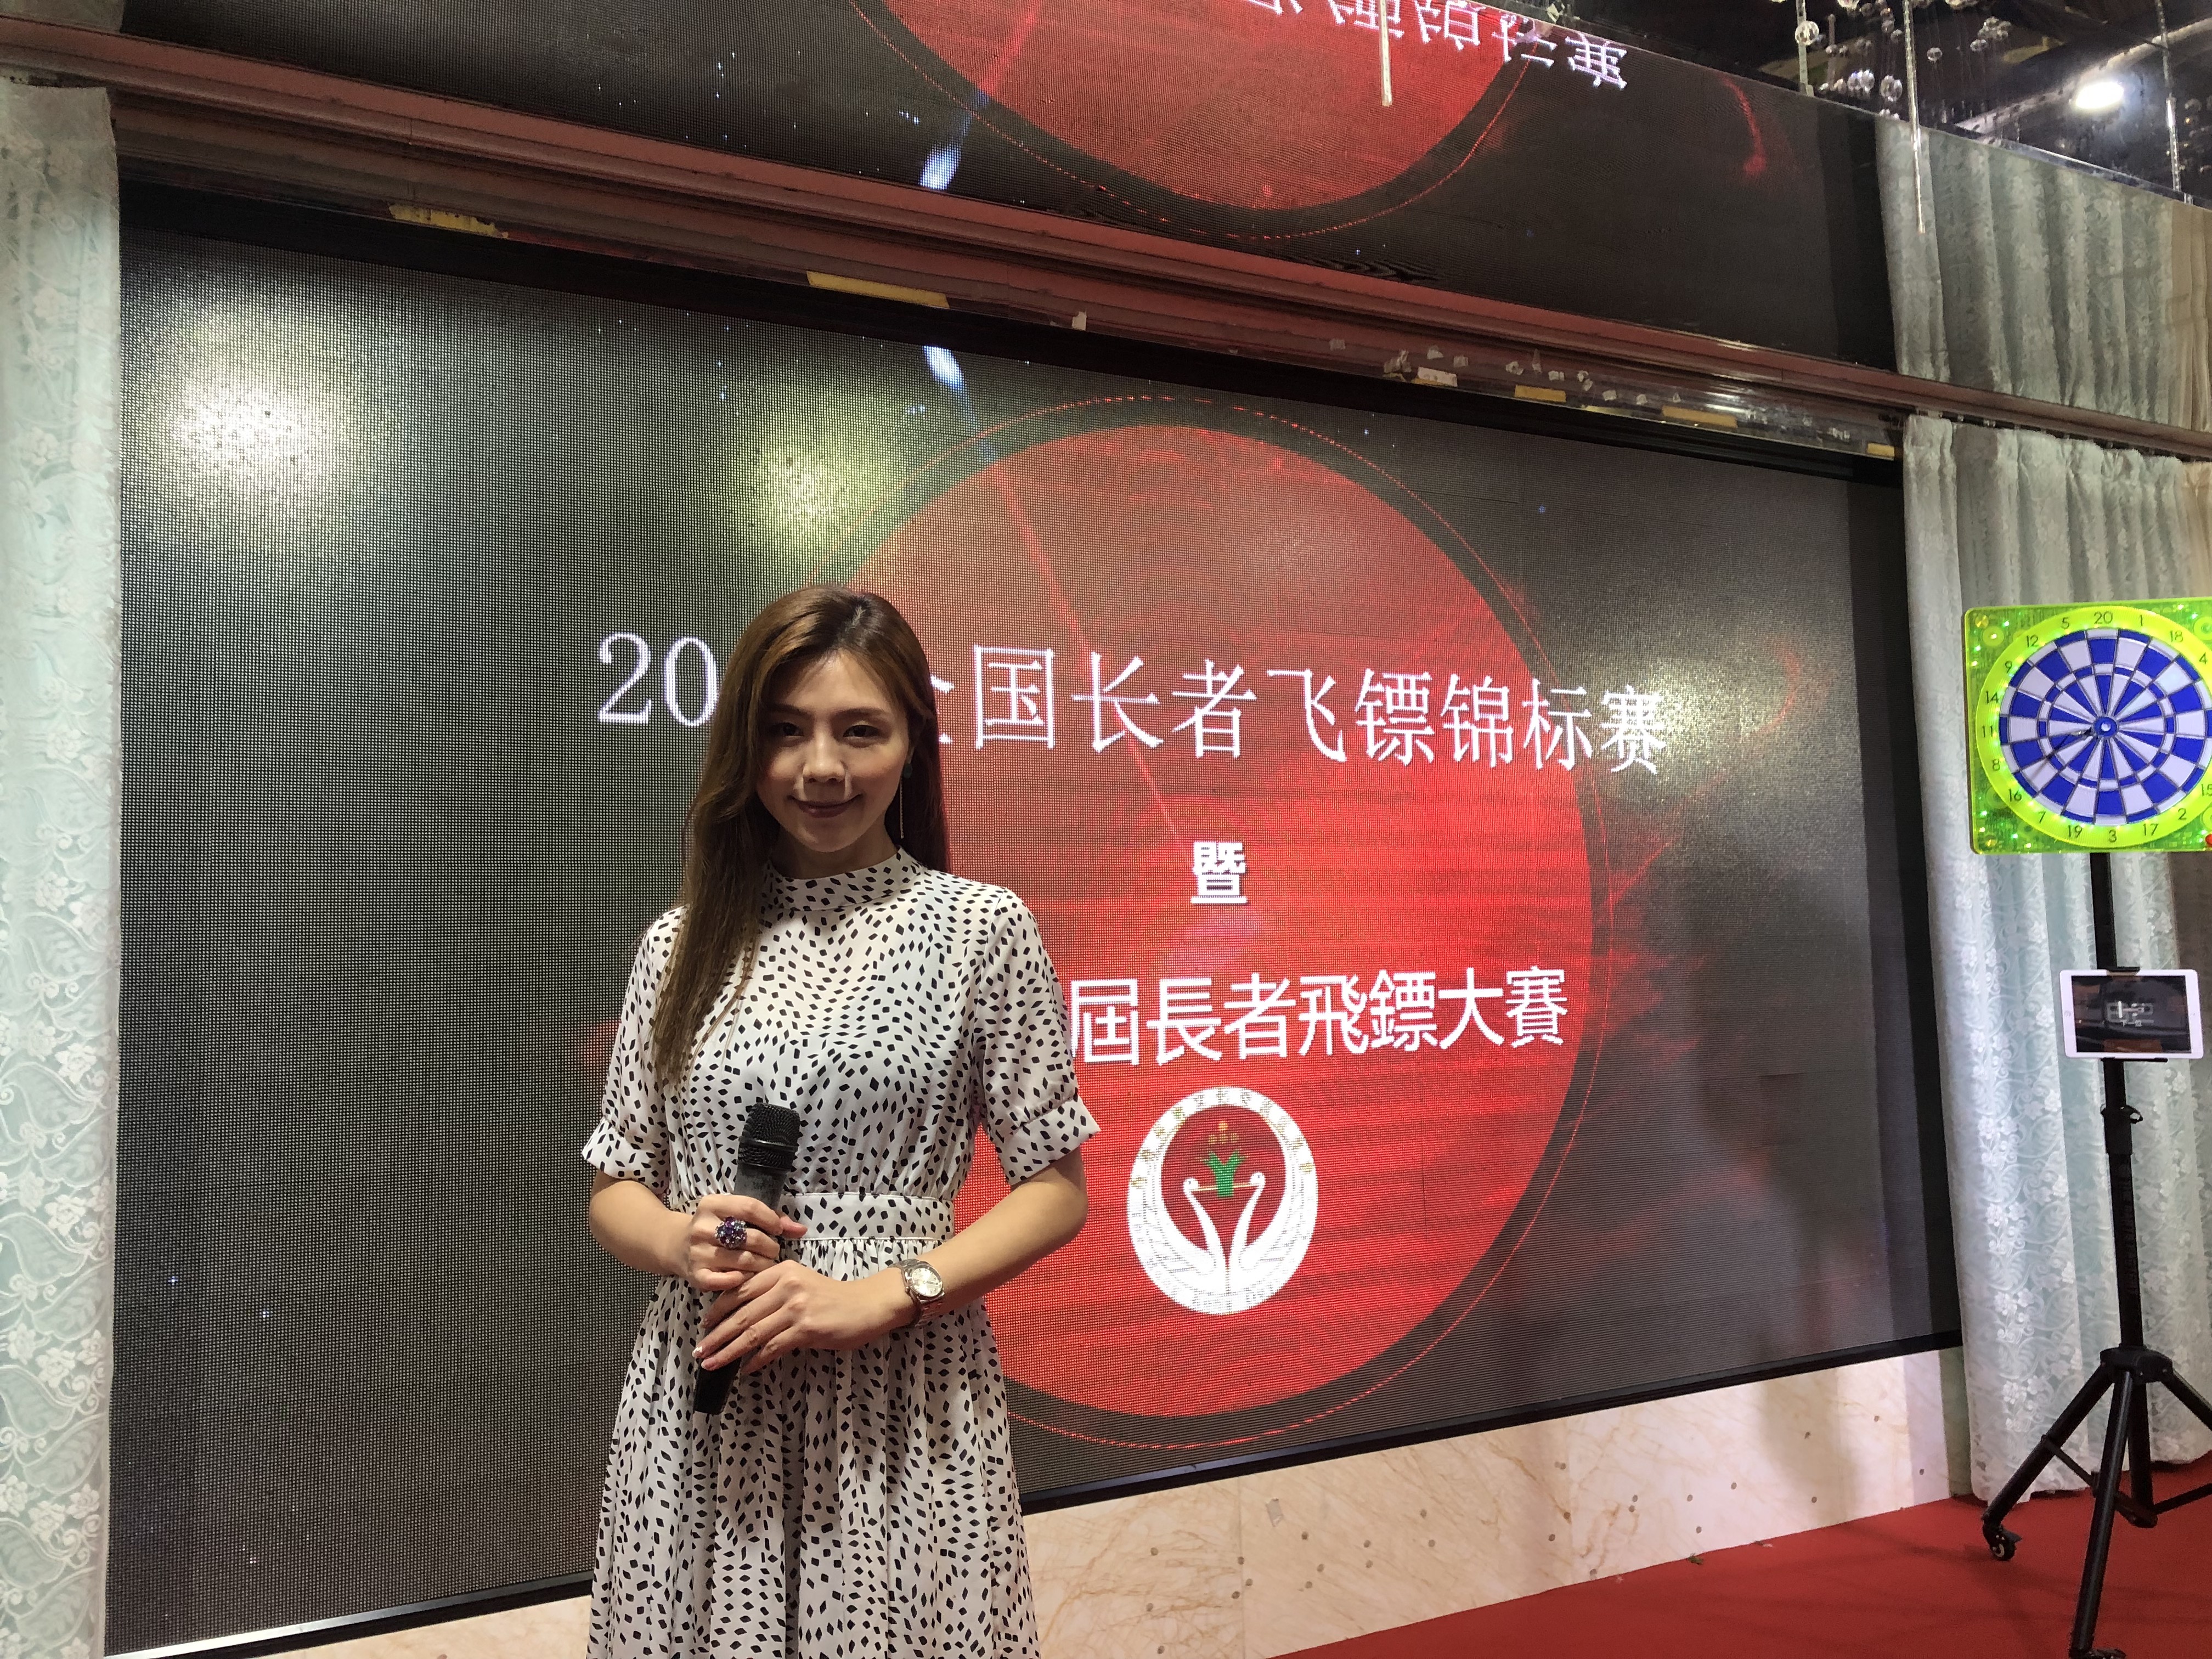 Wendy Tse 謝蕙妍司儀工作紀錄: 2019全國長者飛標錦標賽 發佈會